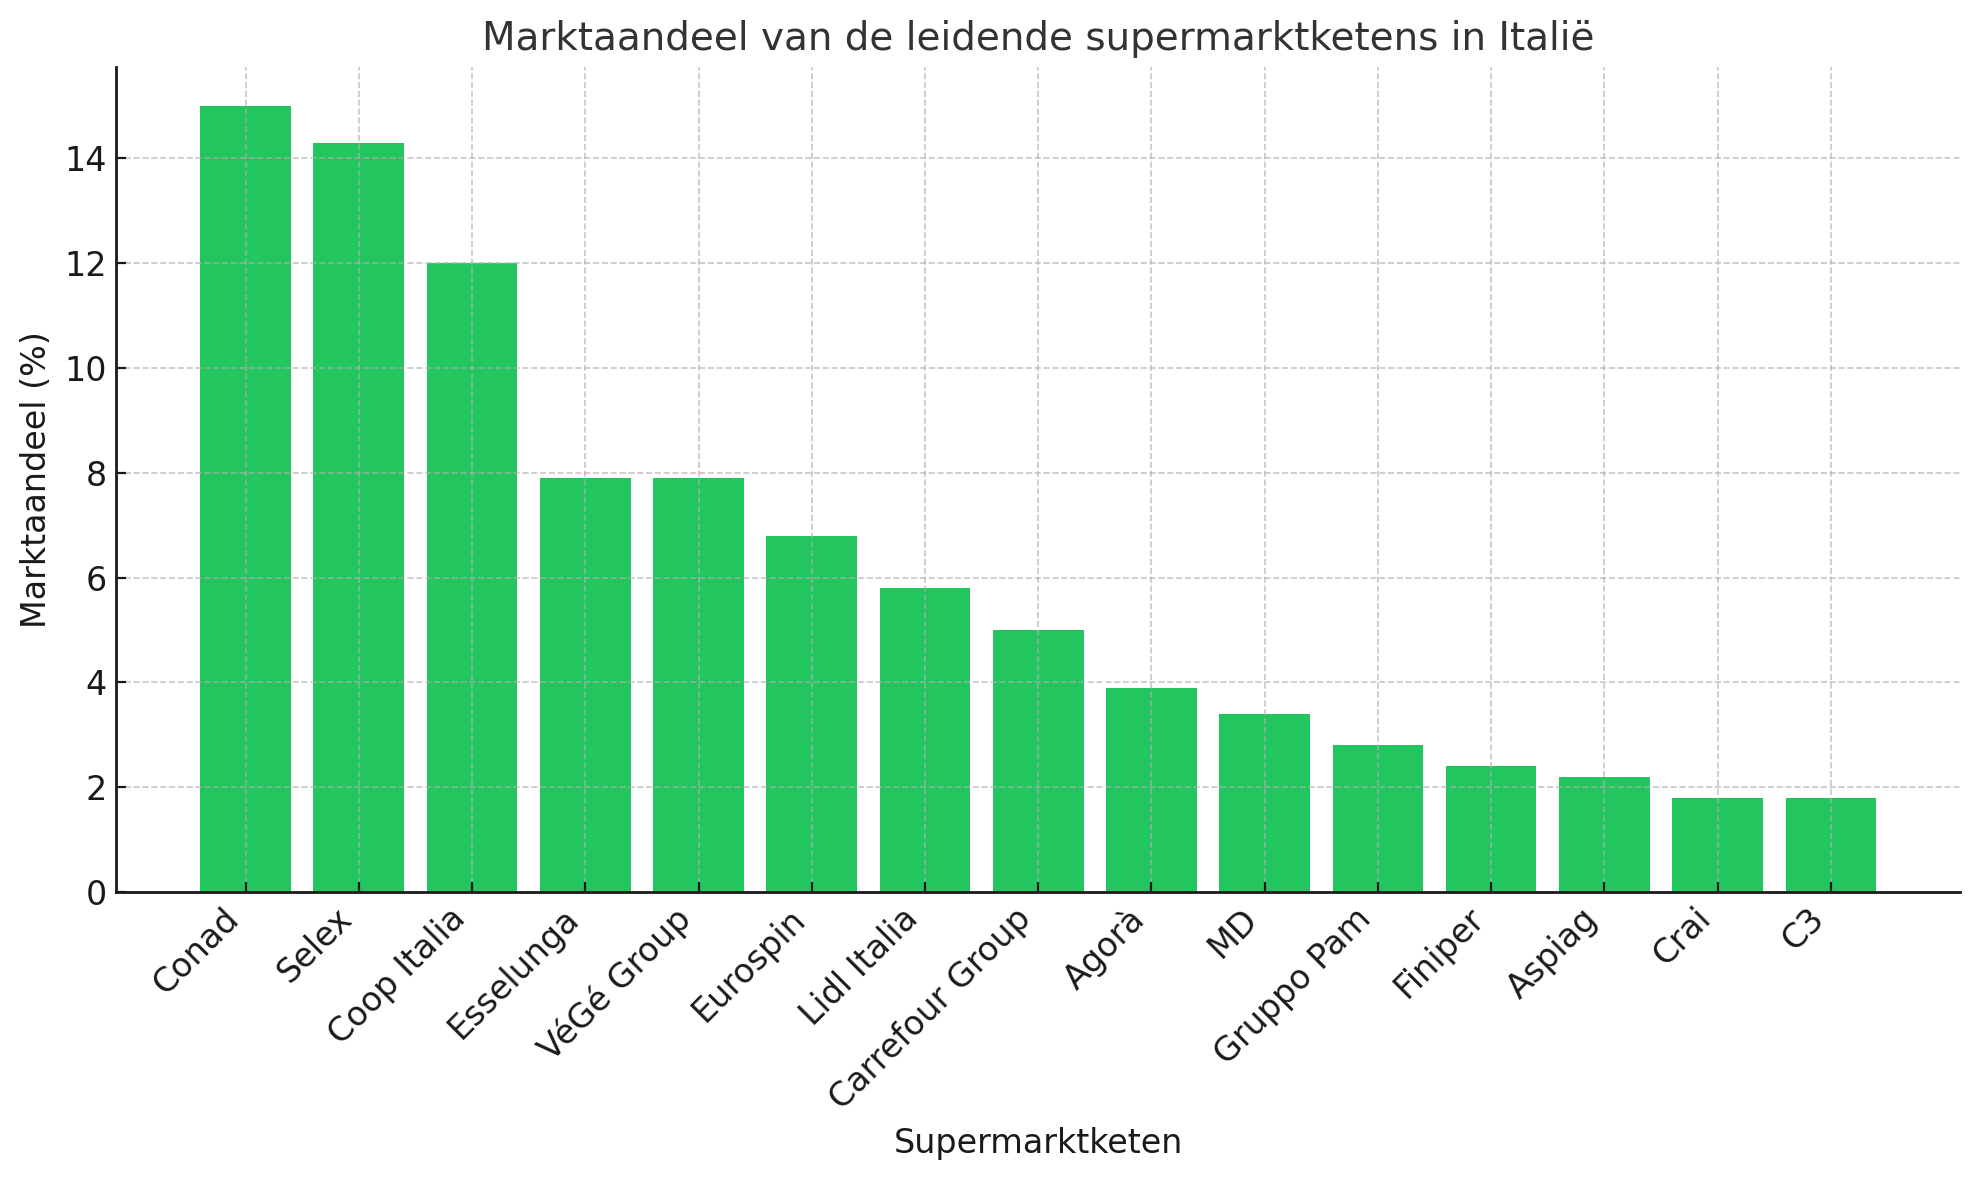 Marktaandeel van de leidende supermarktketens in Italie